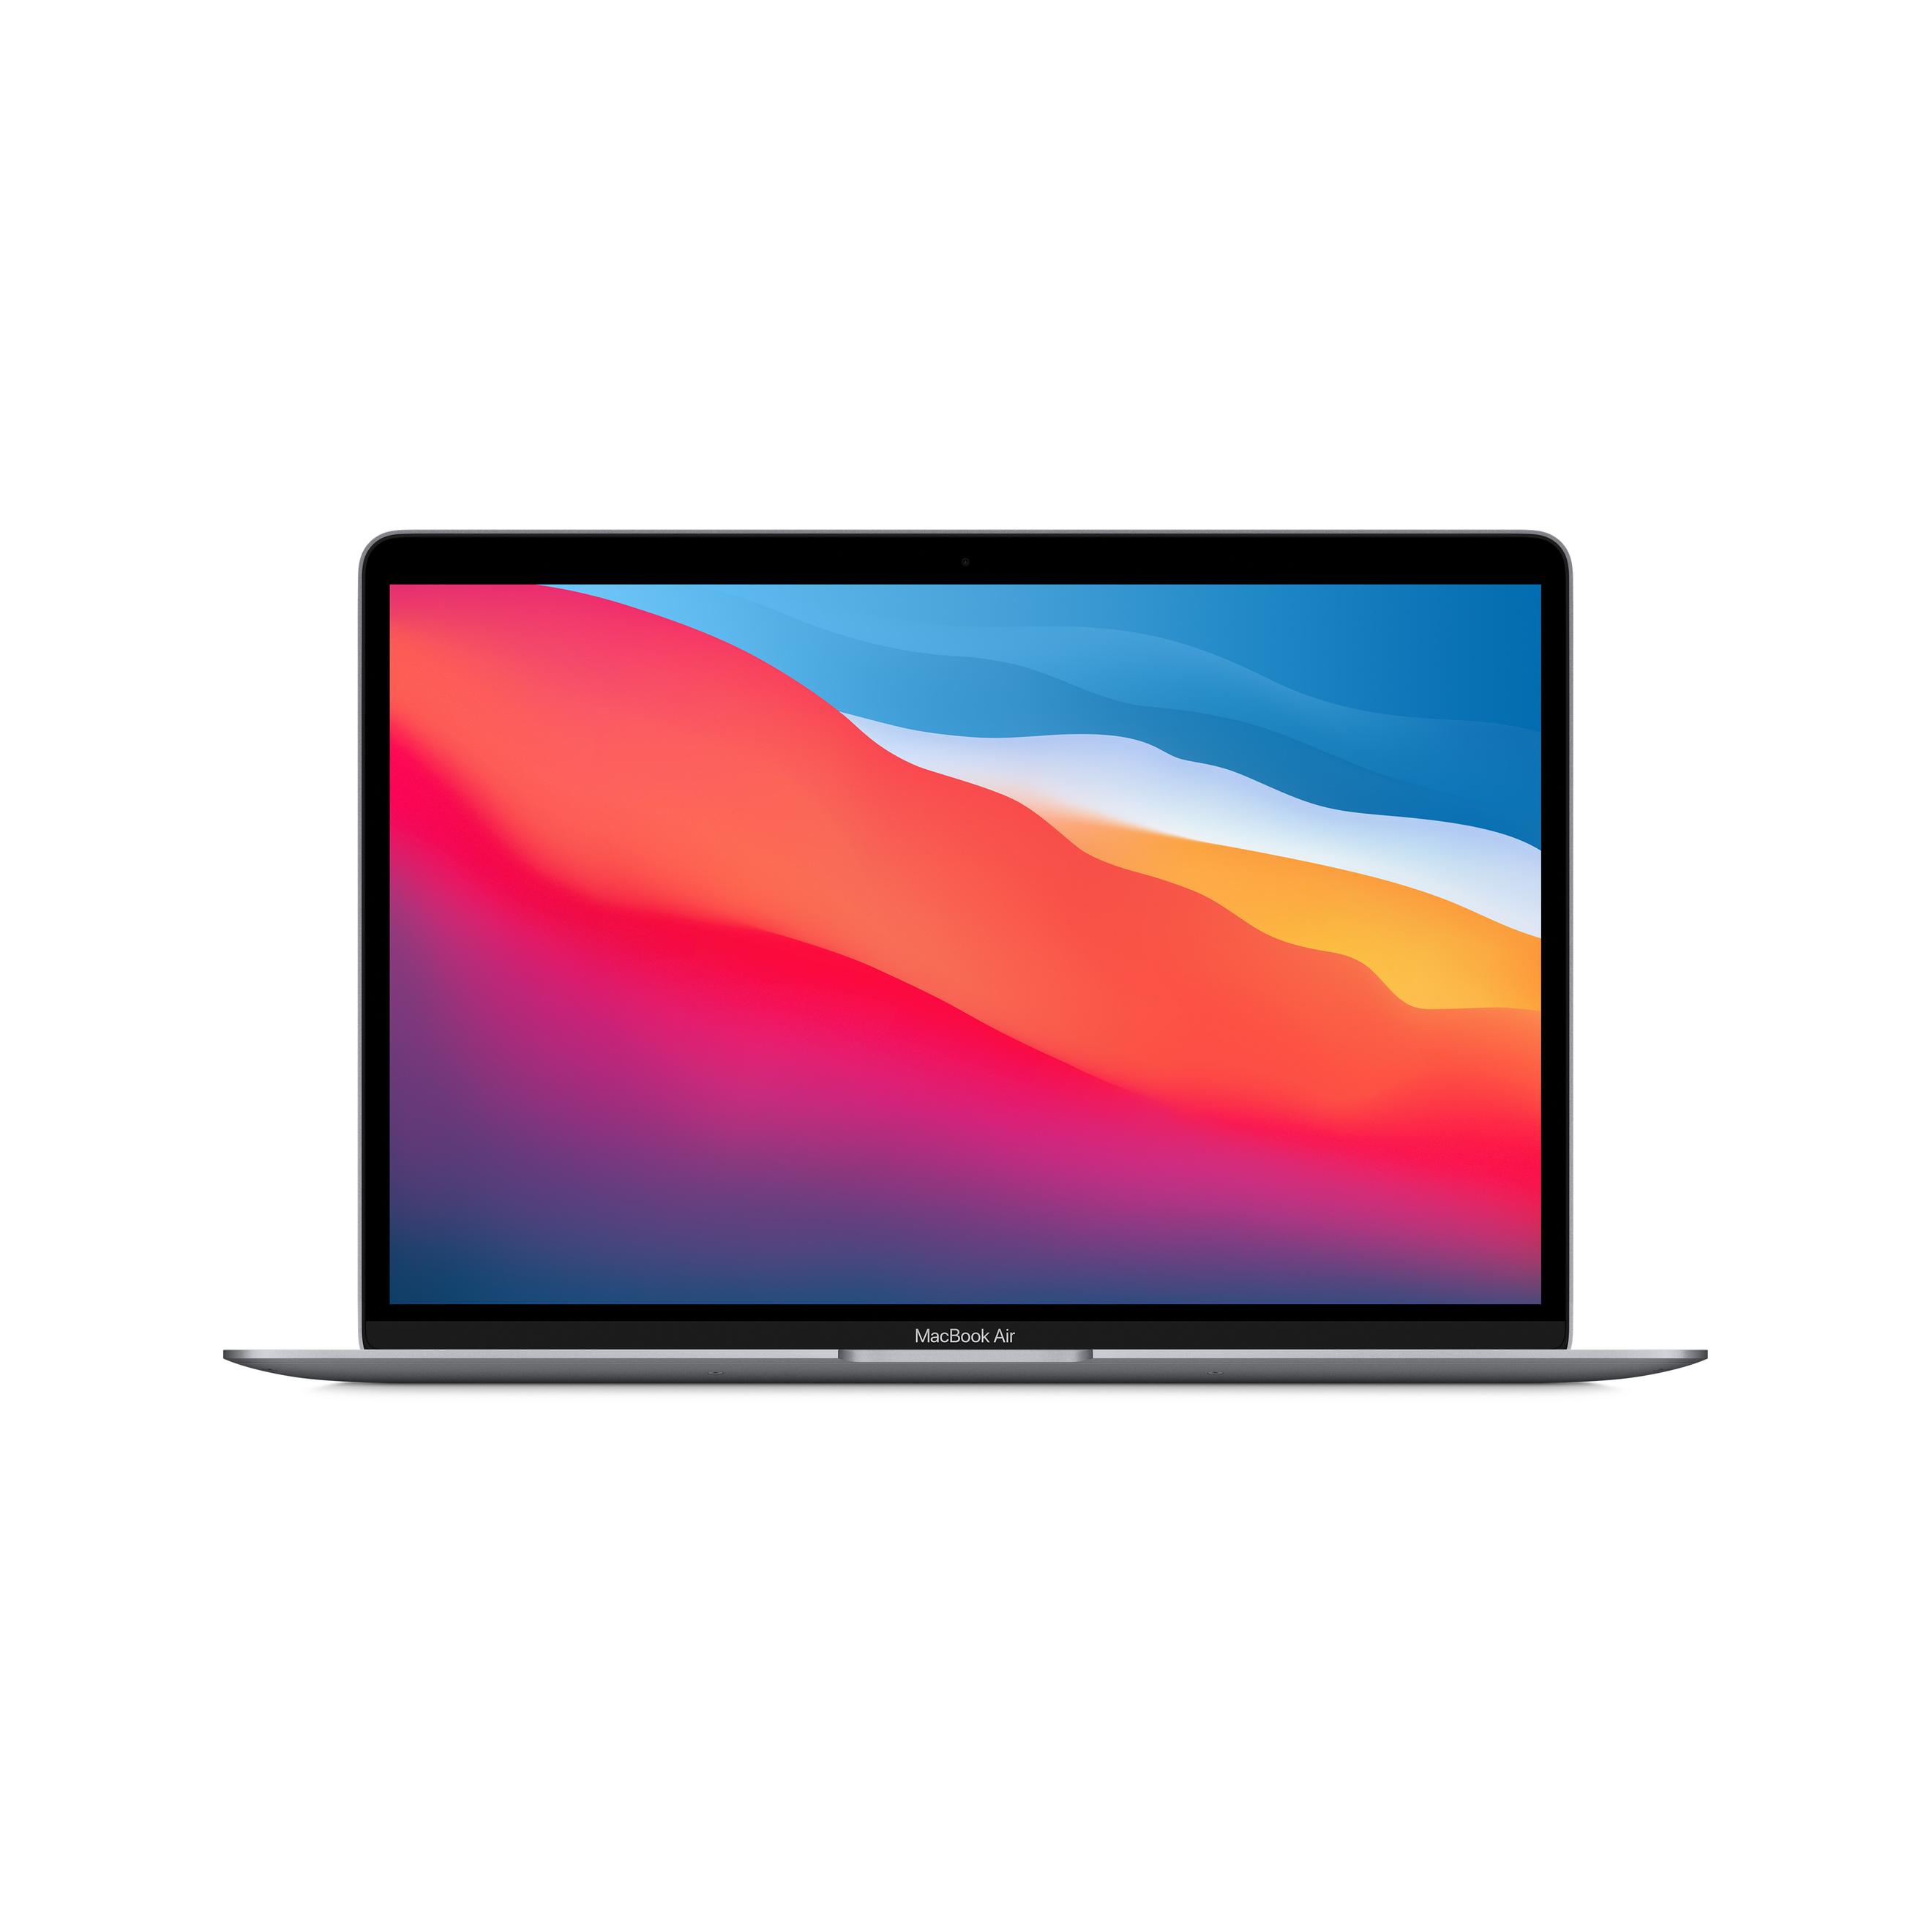 Offerta per Apple - MacBook Air 13" (Chip M1 con GPU 7-core, 256GB SSD, 8GB RAM) - Grigio Siderale (2020) a 929€ in Expert